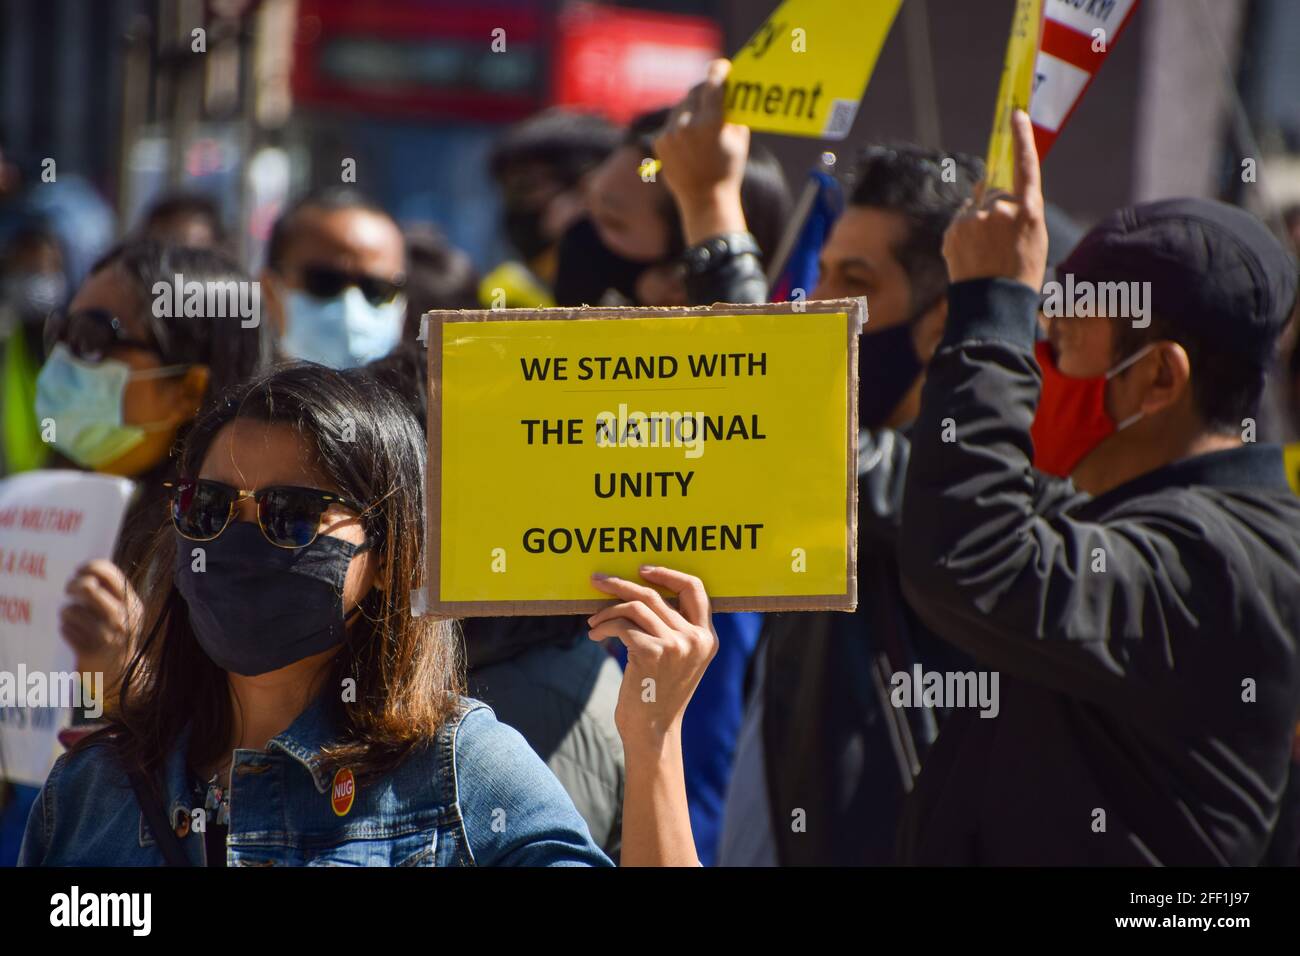 Londres, Royaume-Uni. 24 avril 2021. Des manifestants se sont rassemblés sur la place du Parlement pour protester contre le coup d'État militaire au Myanmar et pour exiger que le gouvernement britannique reconnaisse le gouvernement d'unité nationale du Myanmar. Banque D'Images